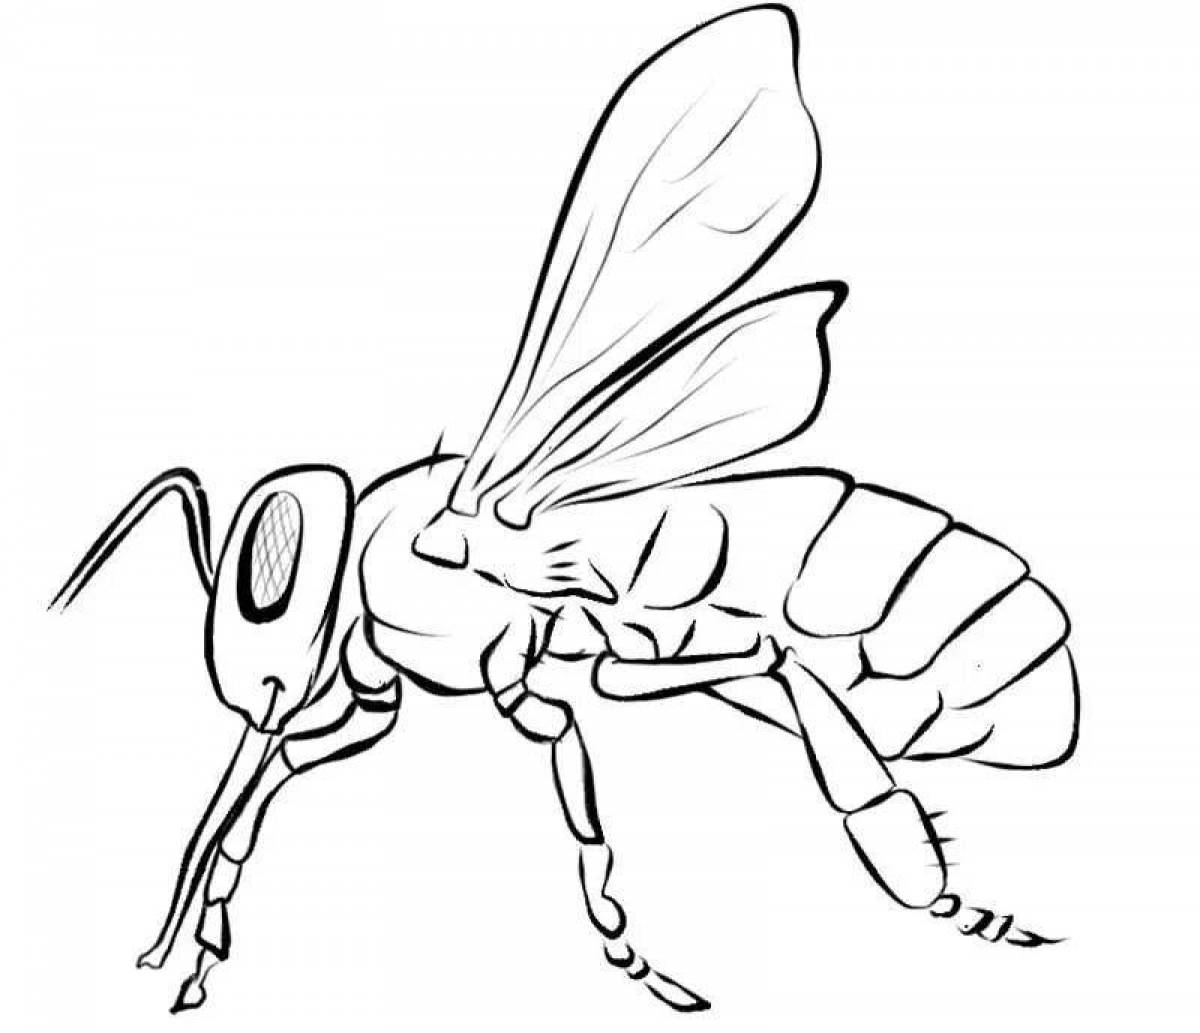 Уникальная страница раскраски осы для детей